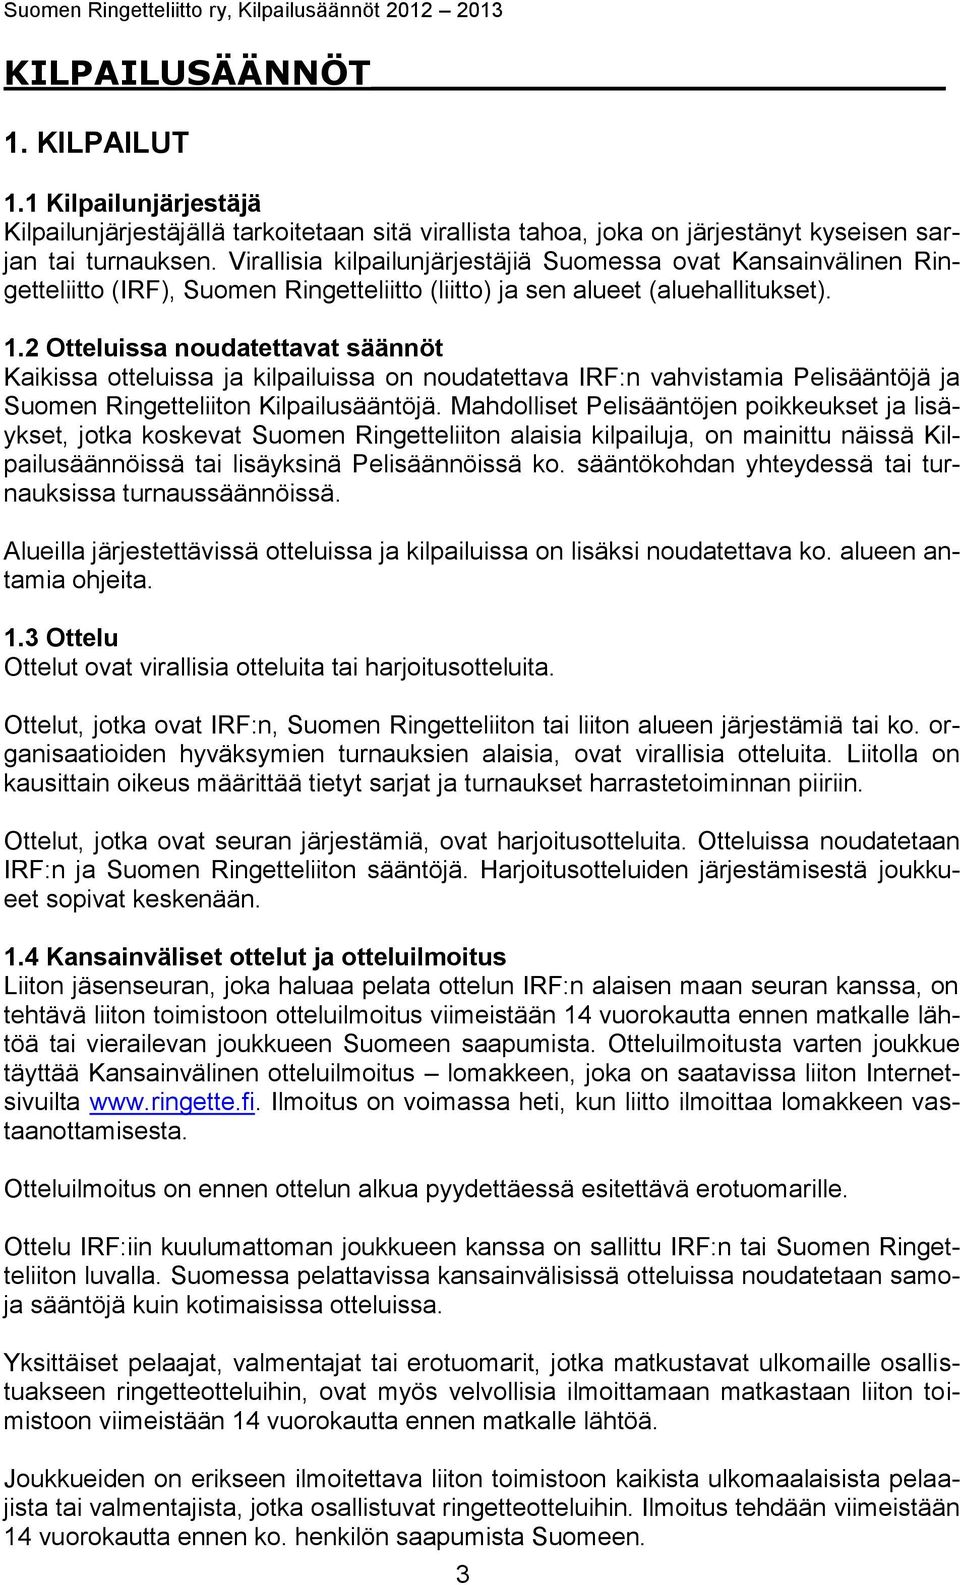 2 Otteluissa noudatettavat säännöt Kaikissa otteluissa ja kilpailuissa on noudatettava IRF:n vahvistamia Pelisääntöjä ja Suomen Ringetteliiton Kilpailusääntöjä.